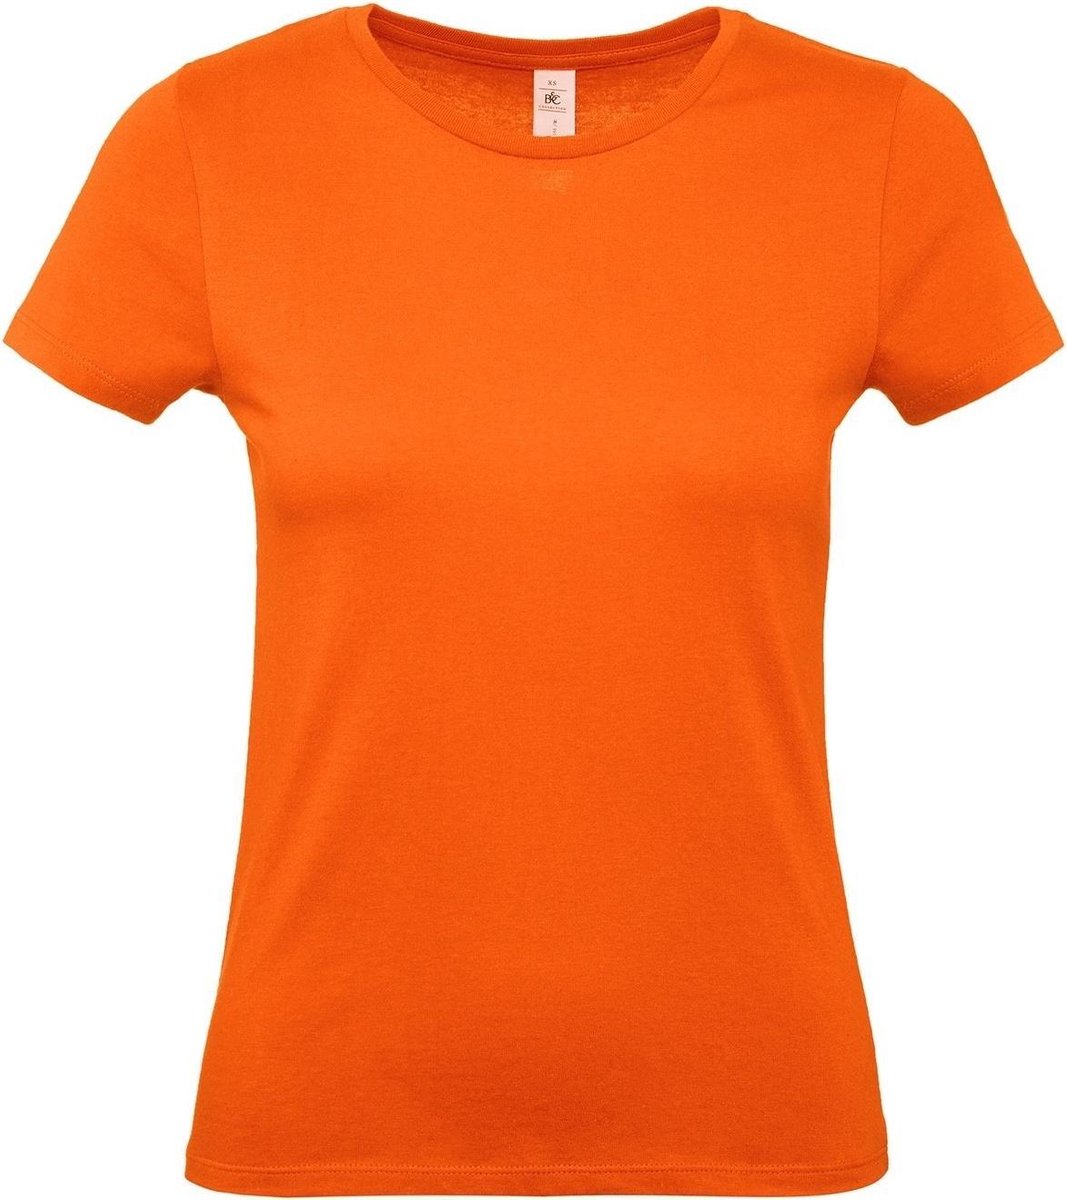 Set van 2x stuks oranje t-shirts met ronde hals voor dames - basic shirt - katoen - Koningsdag / Nederland supporter, maat: S (36)